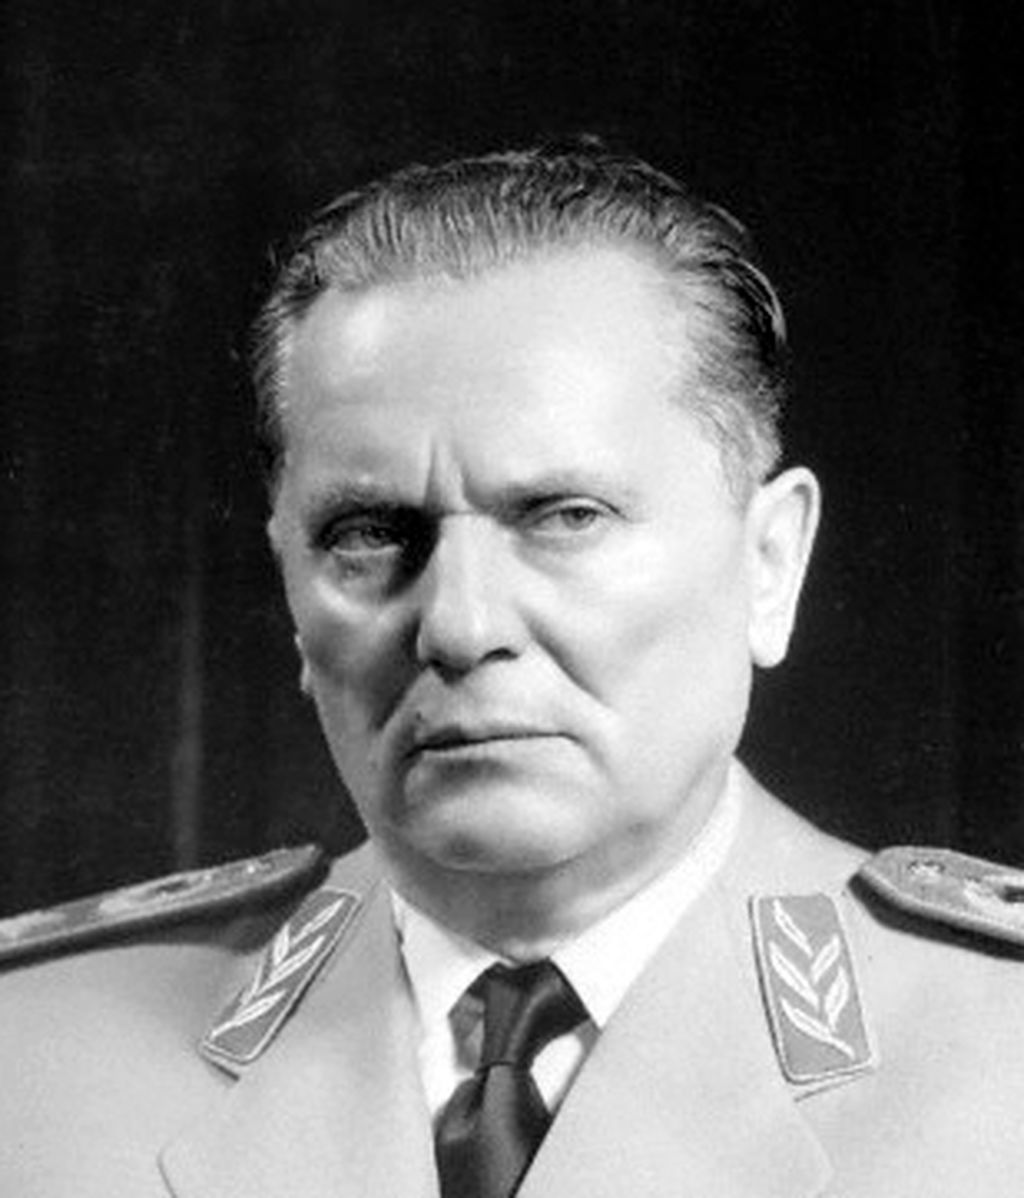 Josip_Broz_Tito_uniform_portrait